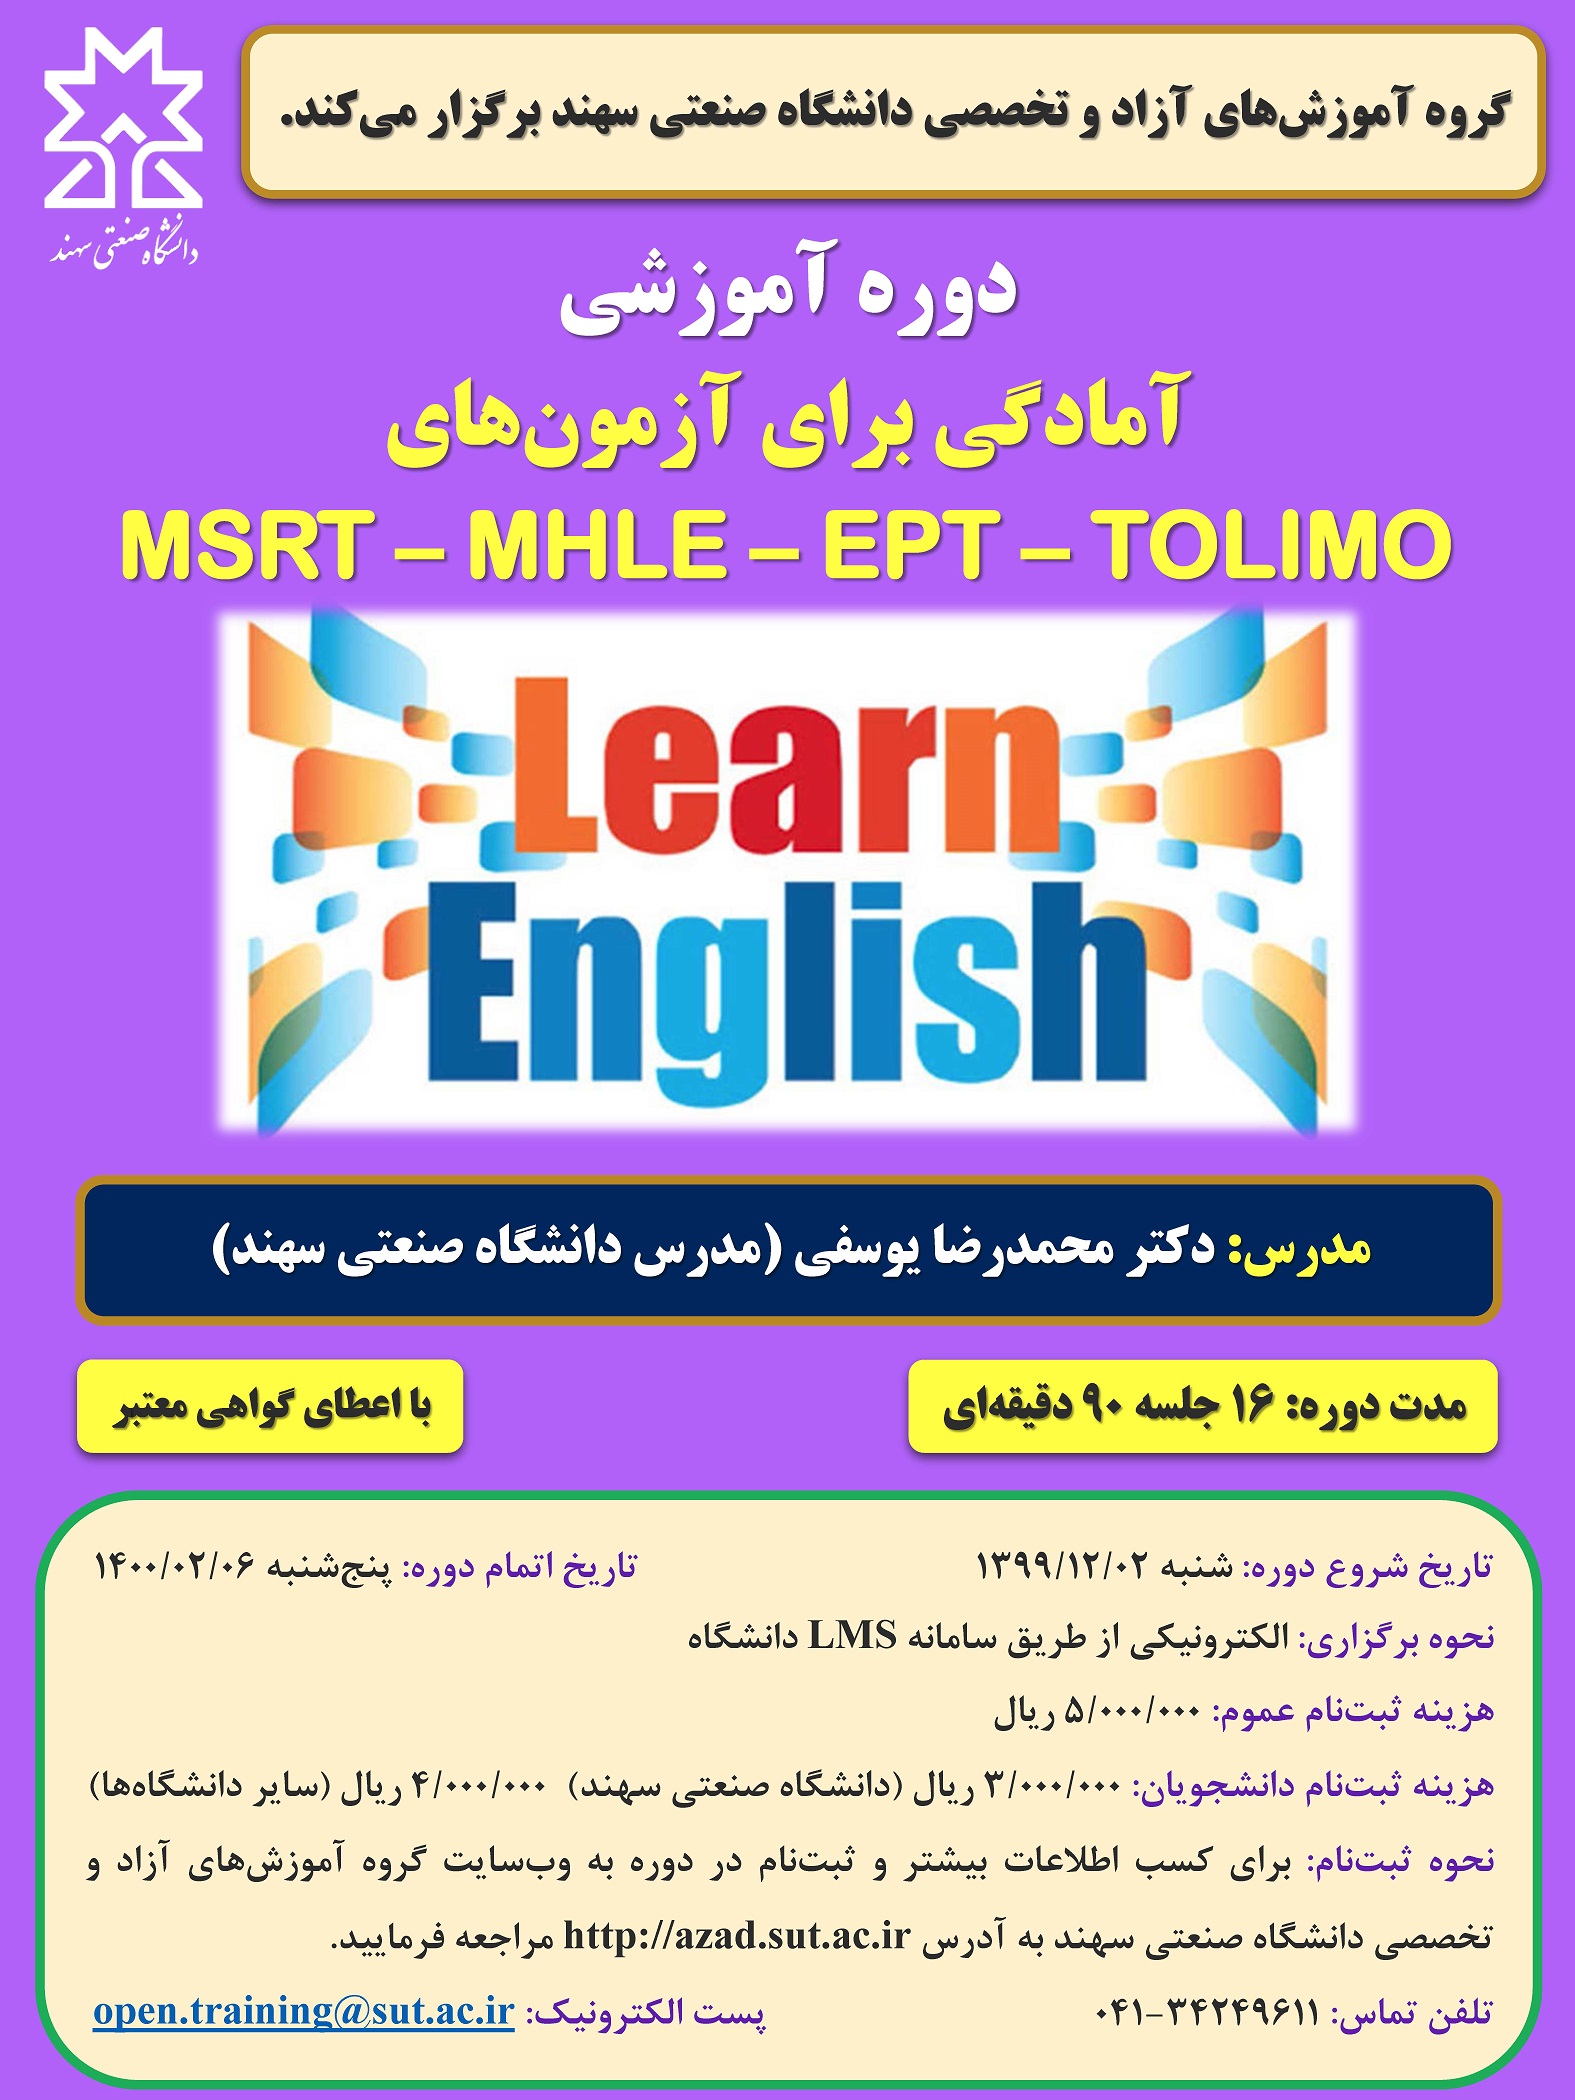 دوره آموزشی آمادگی برای آزمونهای MSRT-MHLE-EPT-TOLIMO